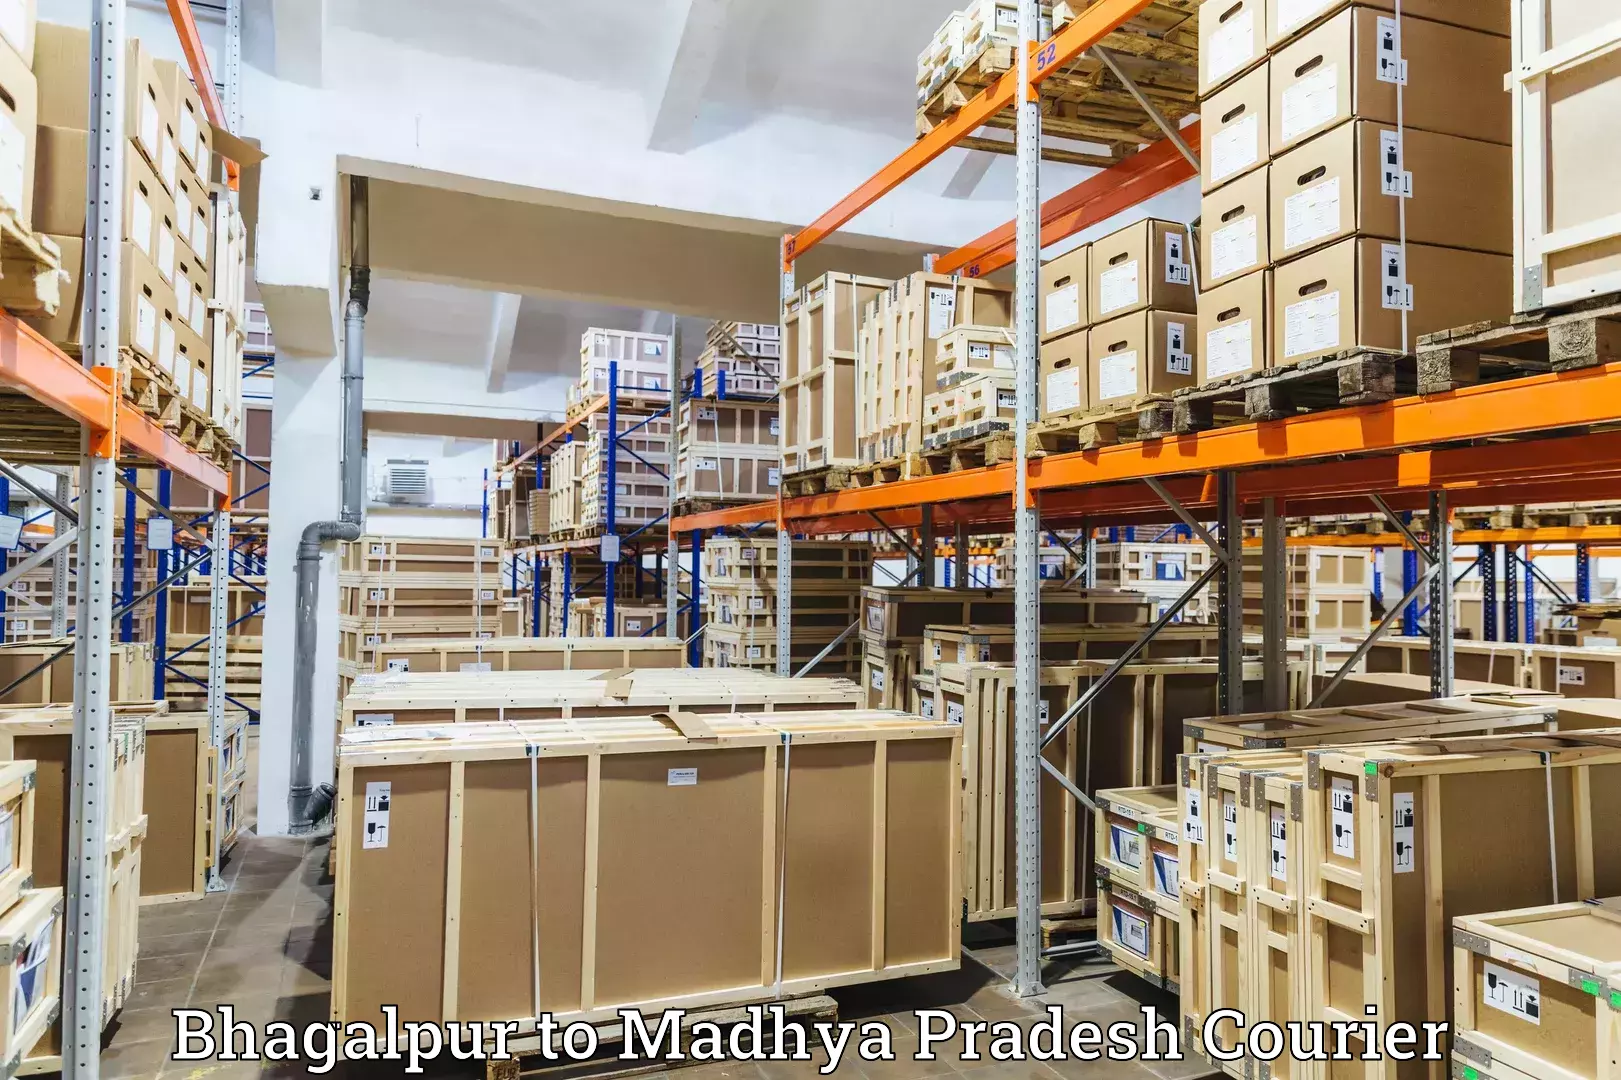 Customer-focused courier Bhagalpur to Madhya Pradesh